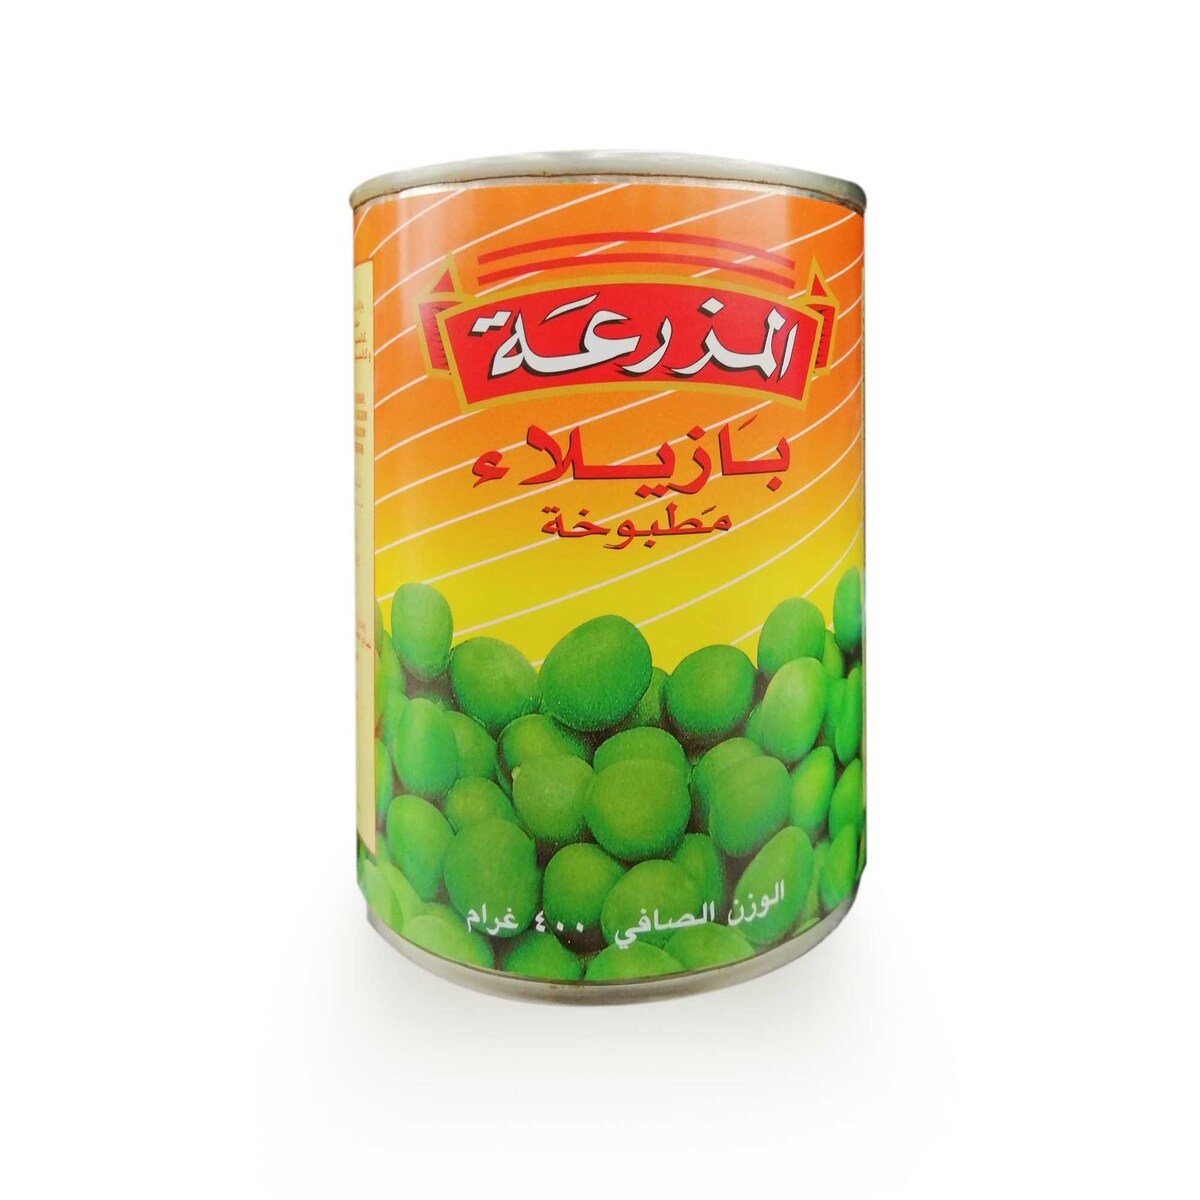 Al Mazraa Processed Peas 400g